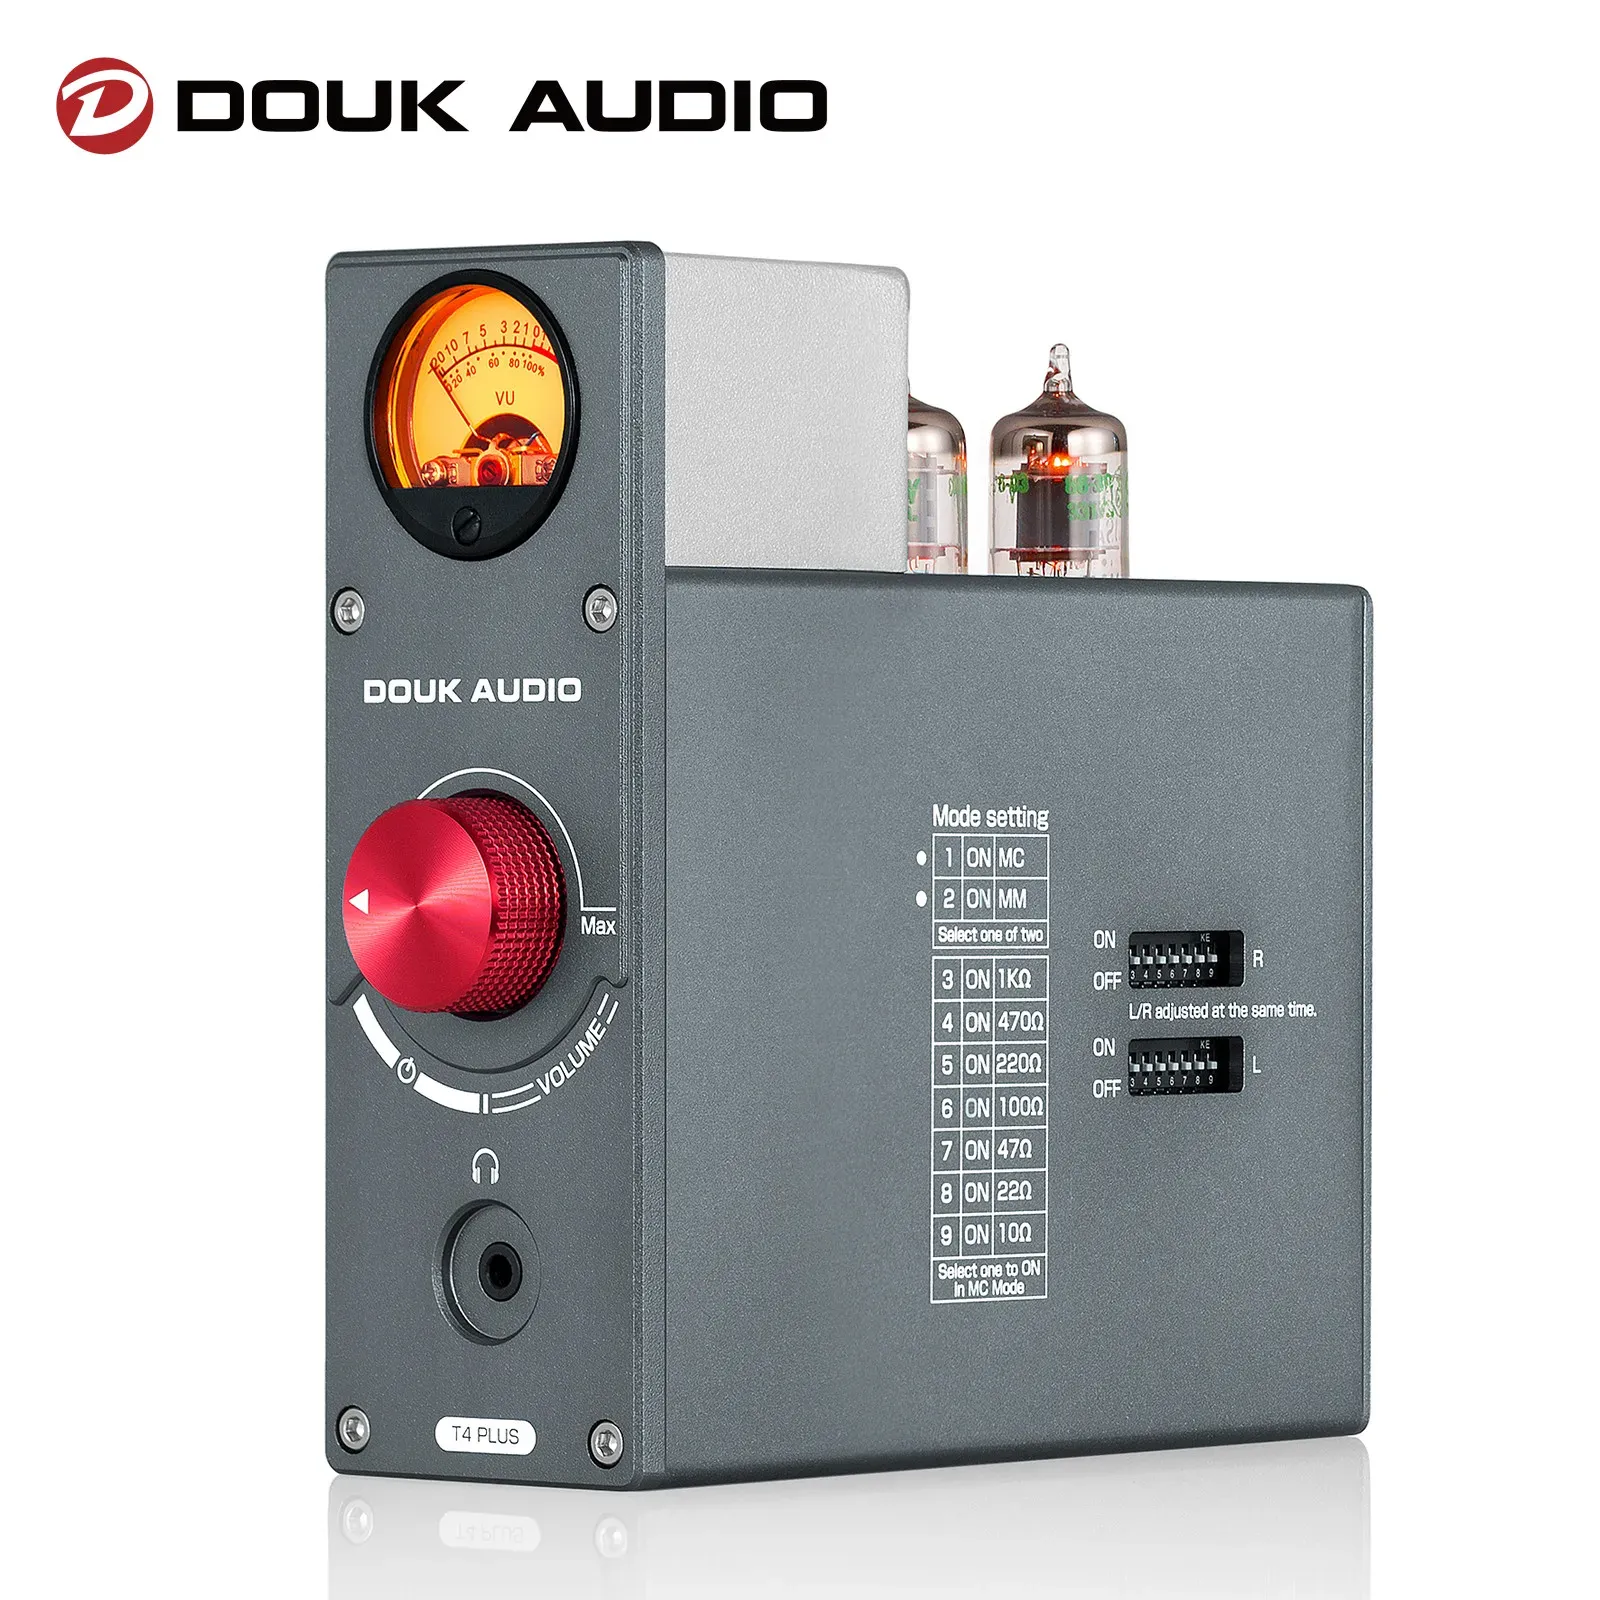 Amplifier Douk Audio 5654 Vakuumrör Phono Stage Preamp för hemskåpens hörtelefon AMP w/Vu Meter Stereo Audio Preamp för TV/MP3/telefon